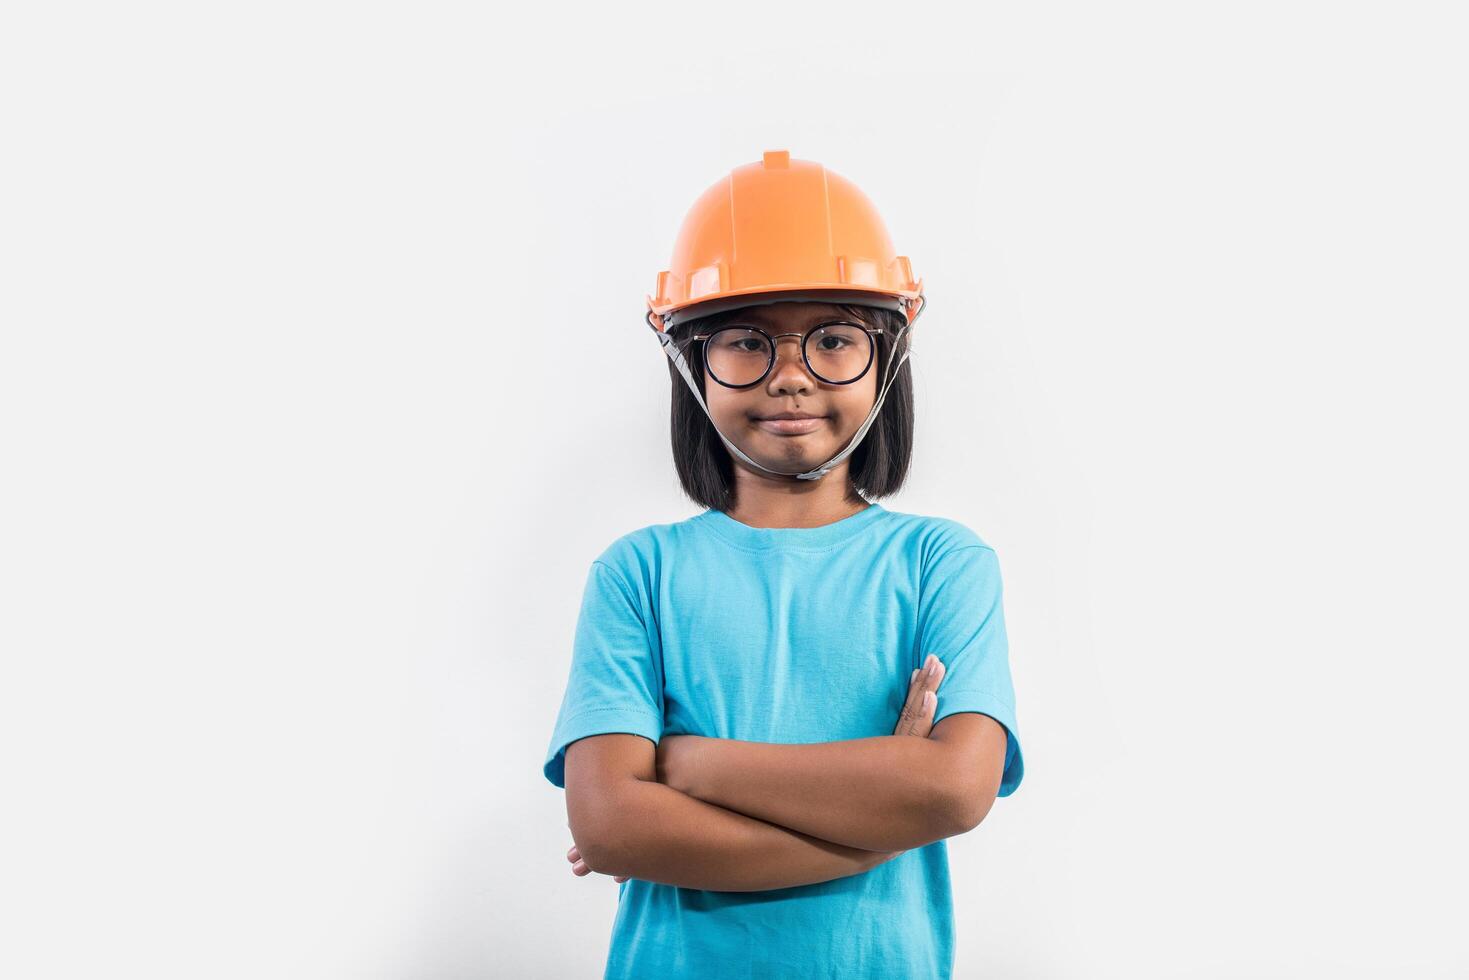 kleines Mädchen mit orangefarbenem Helm in Studioaufnahme. foto